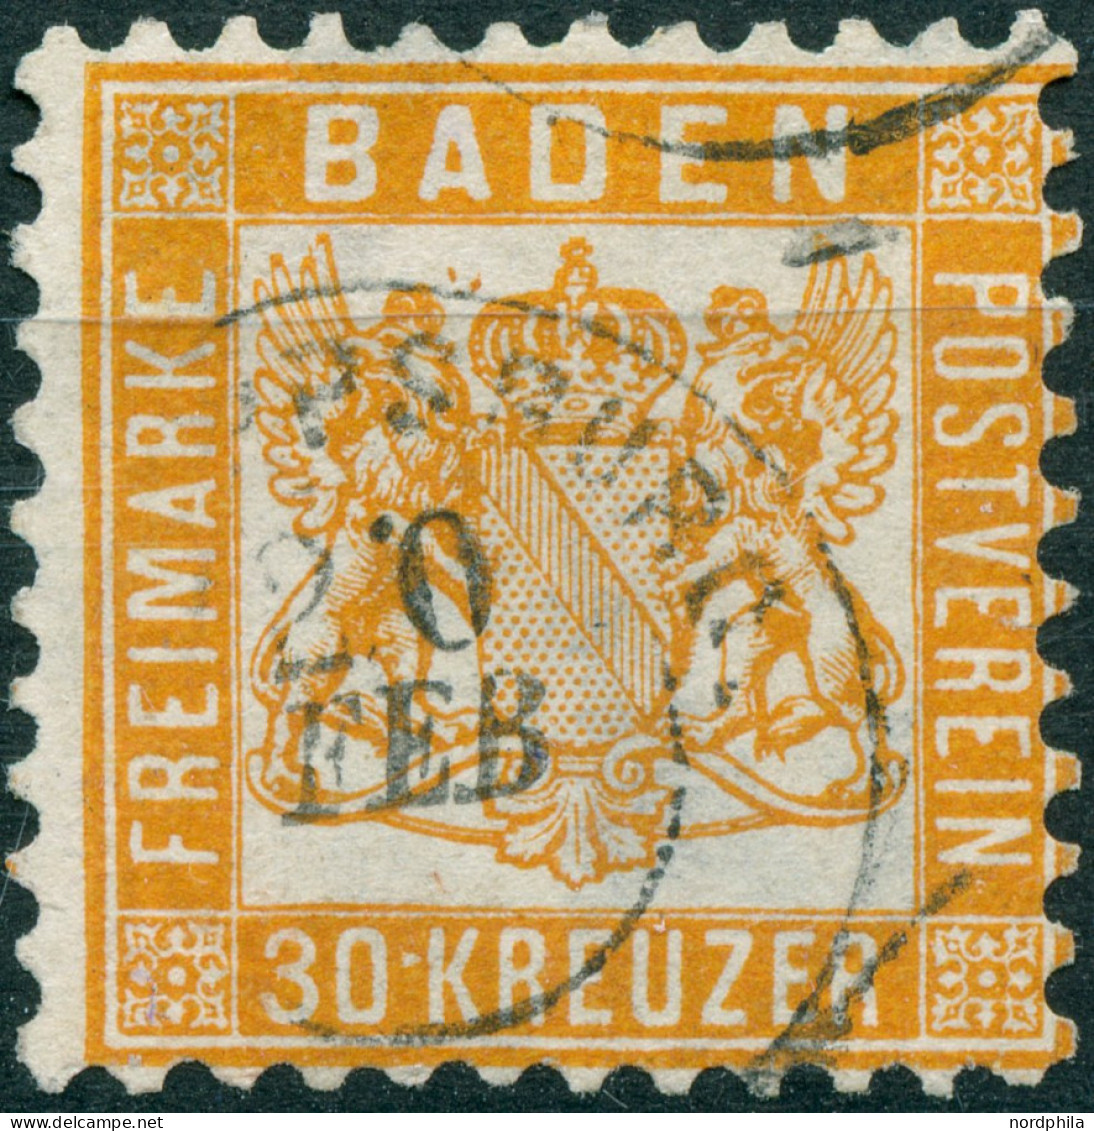 BADEN O, 1860/6, 18 Verschiedene Gestempelte Werte, U.a. Die Spitzenwerte 18 Kr. Und 30 Kr., Unterschiedliche Erhaltung, - Usati